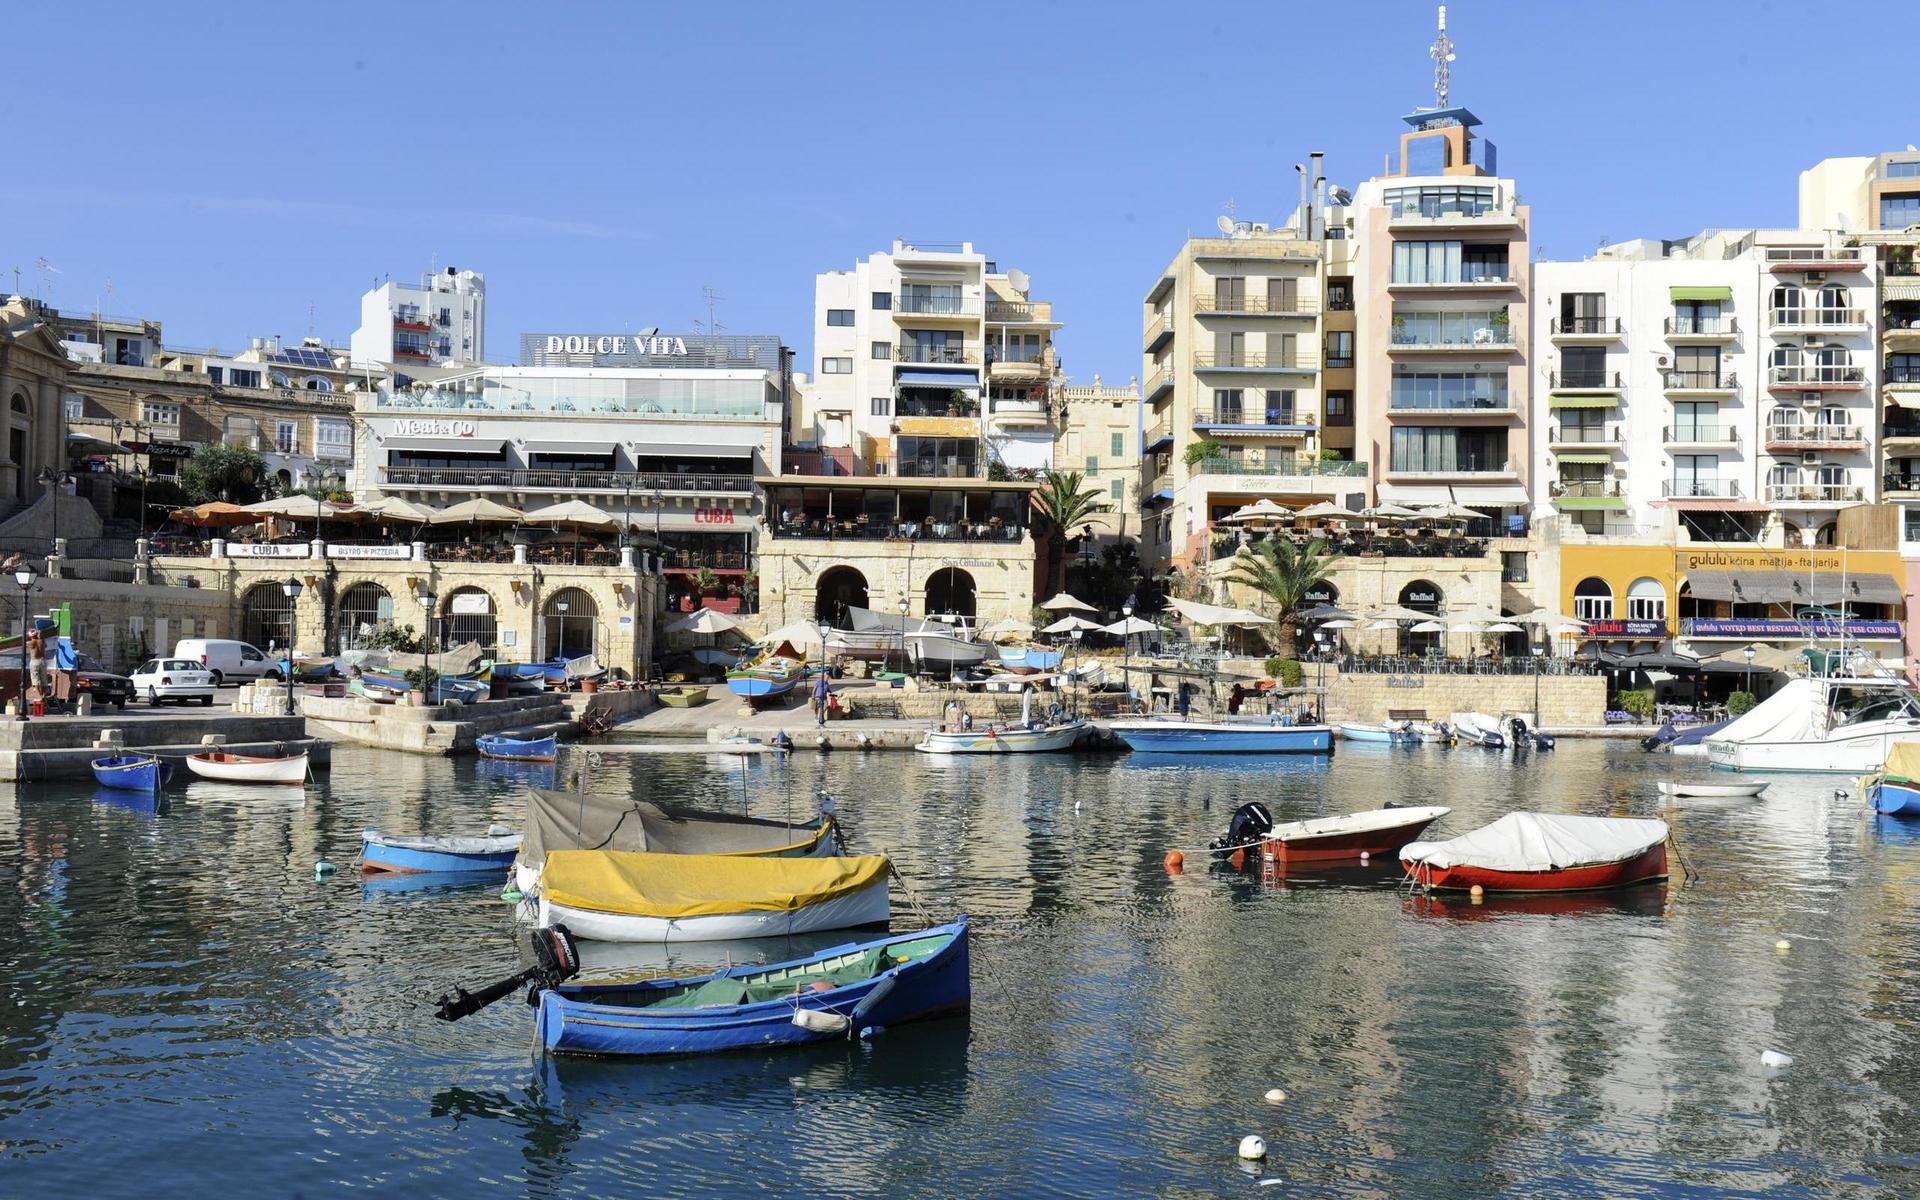 Båtutflykter är ett måste för många turister som besöker Malta, beläget mitt i Medelhavet.